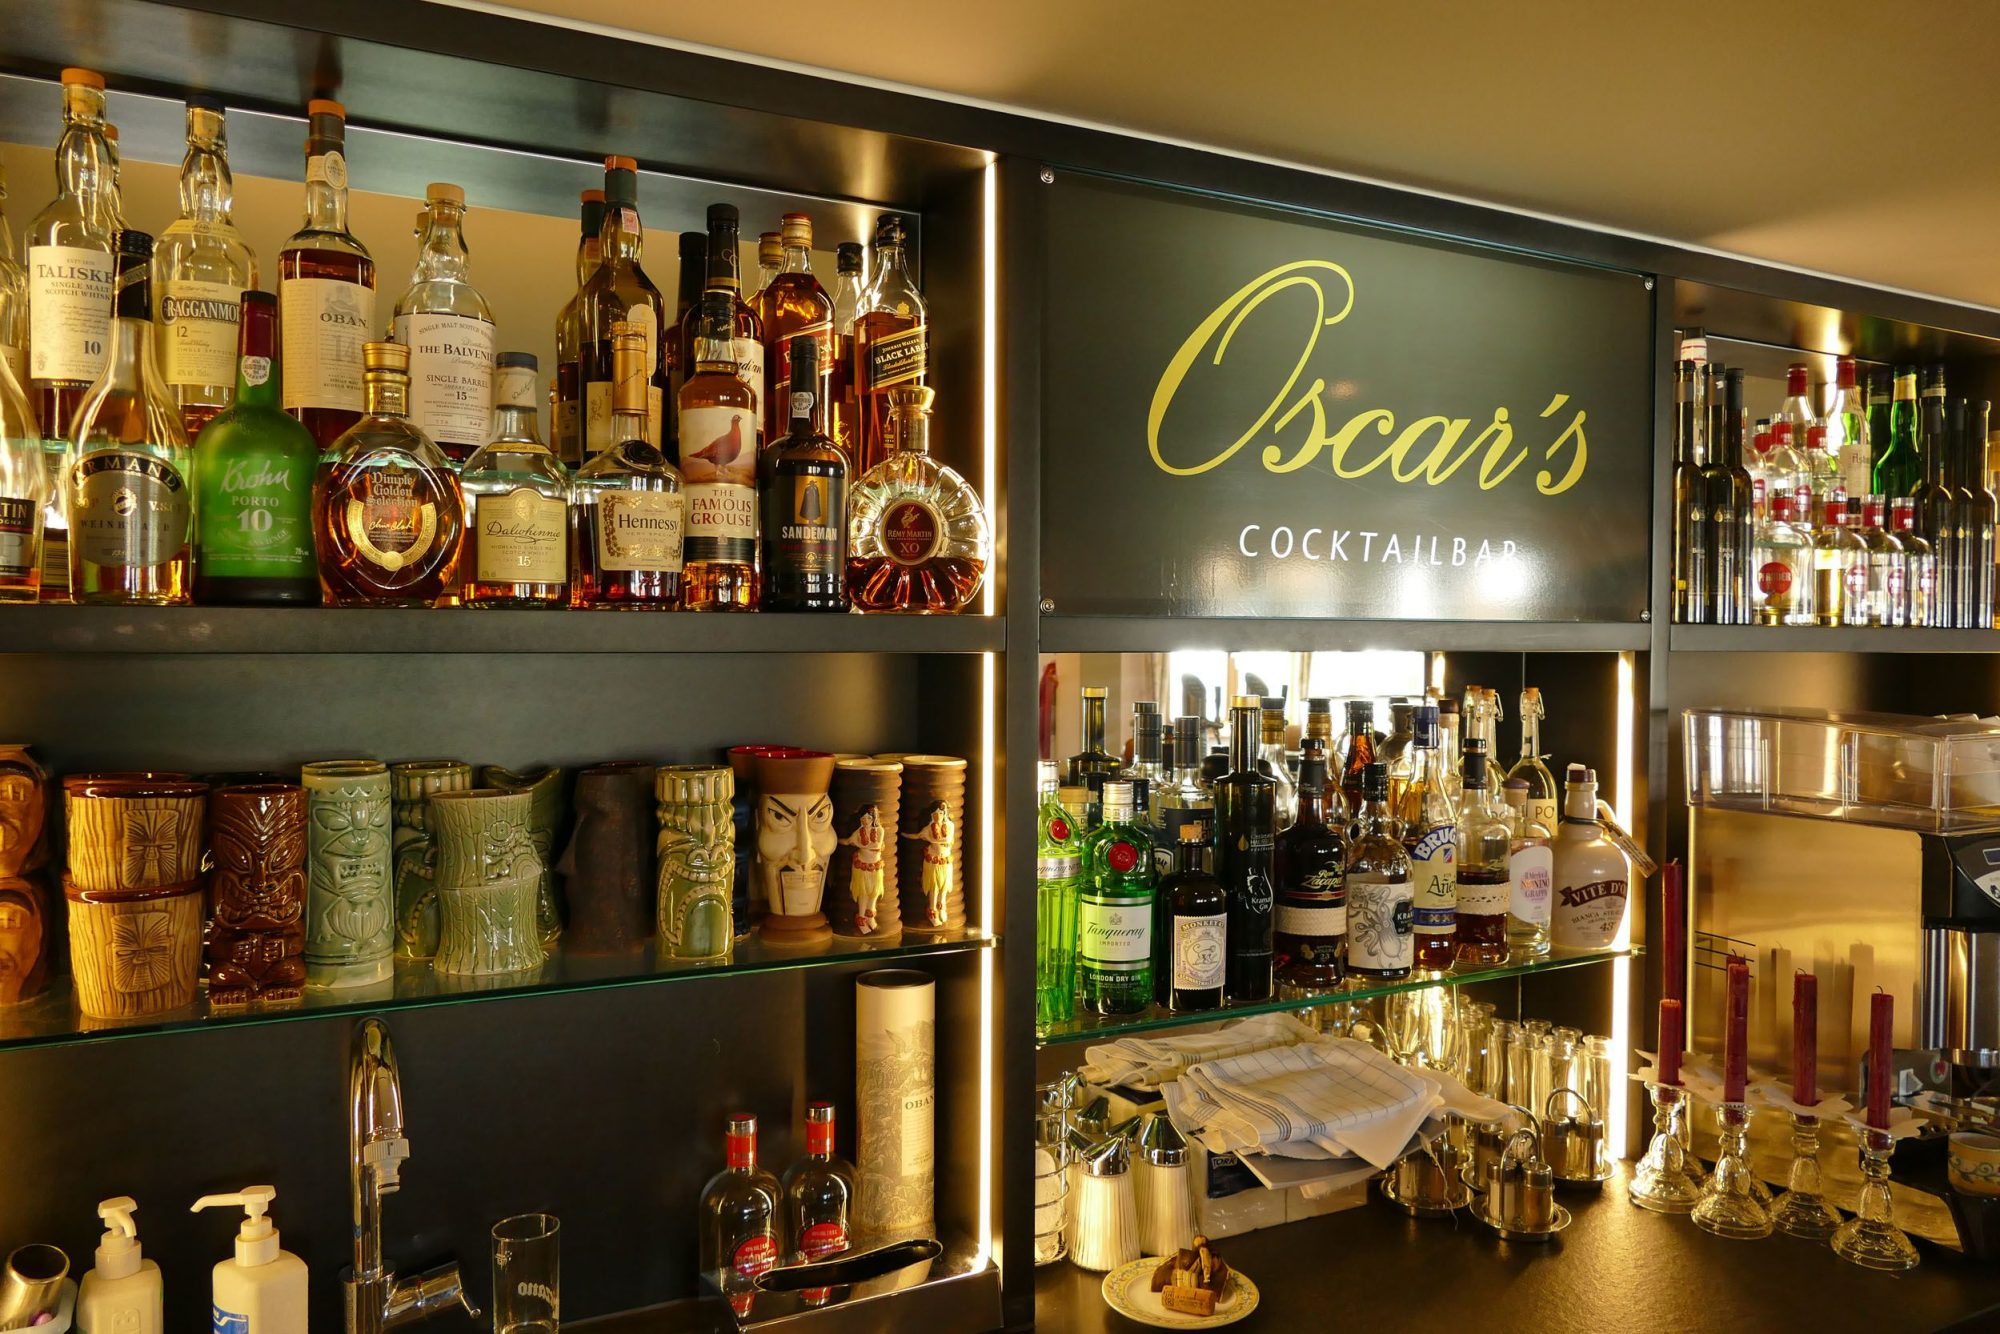 Oscar's Cocktailbar